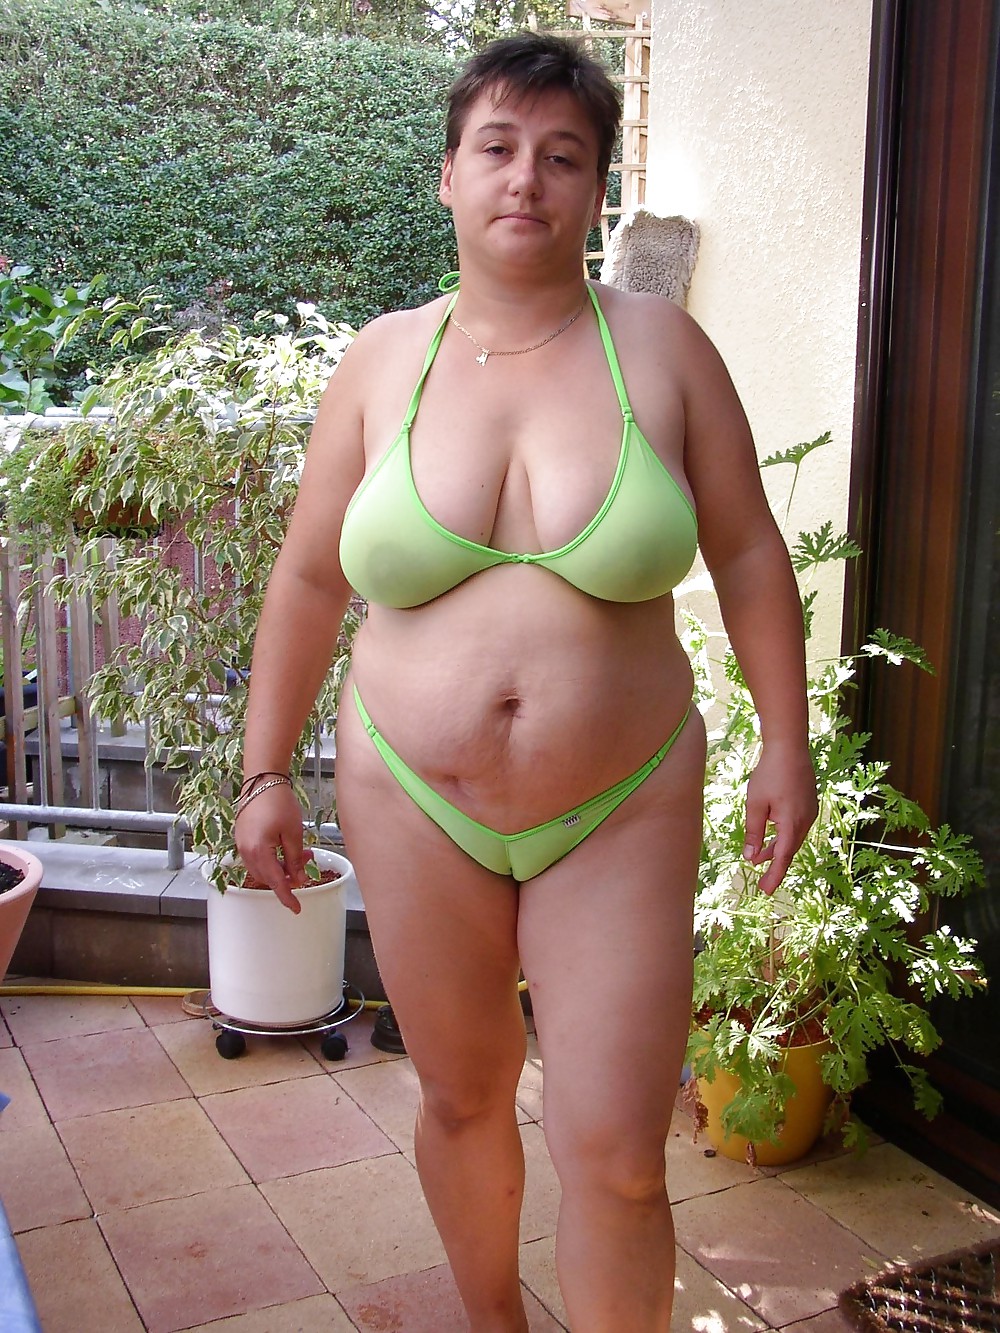 Saggy tits in bikini. pict gal